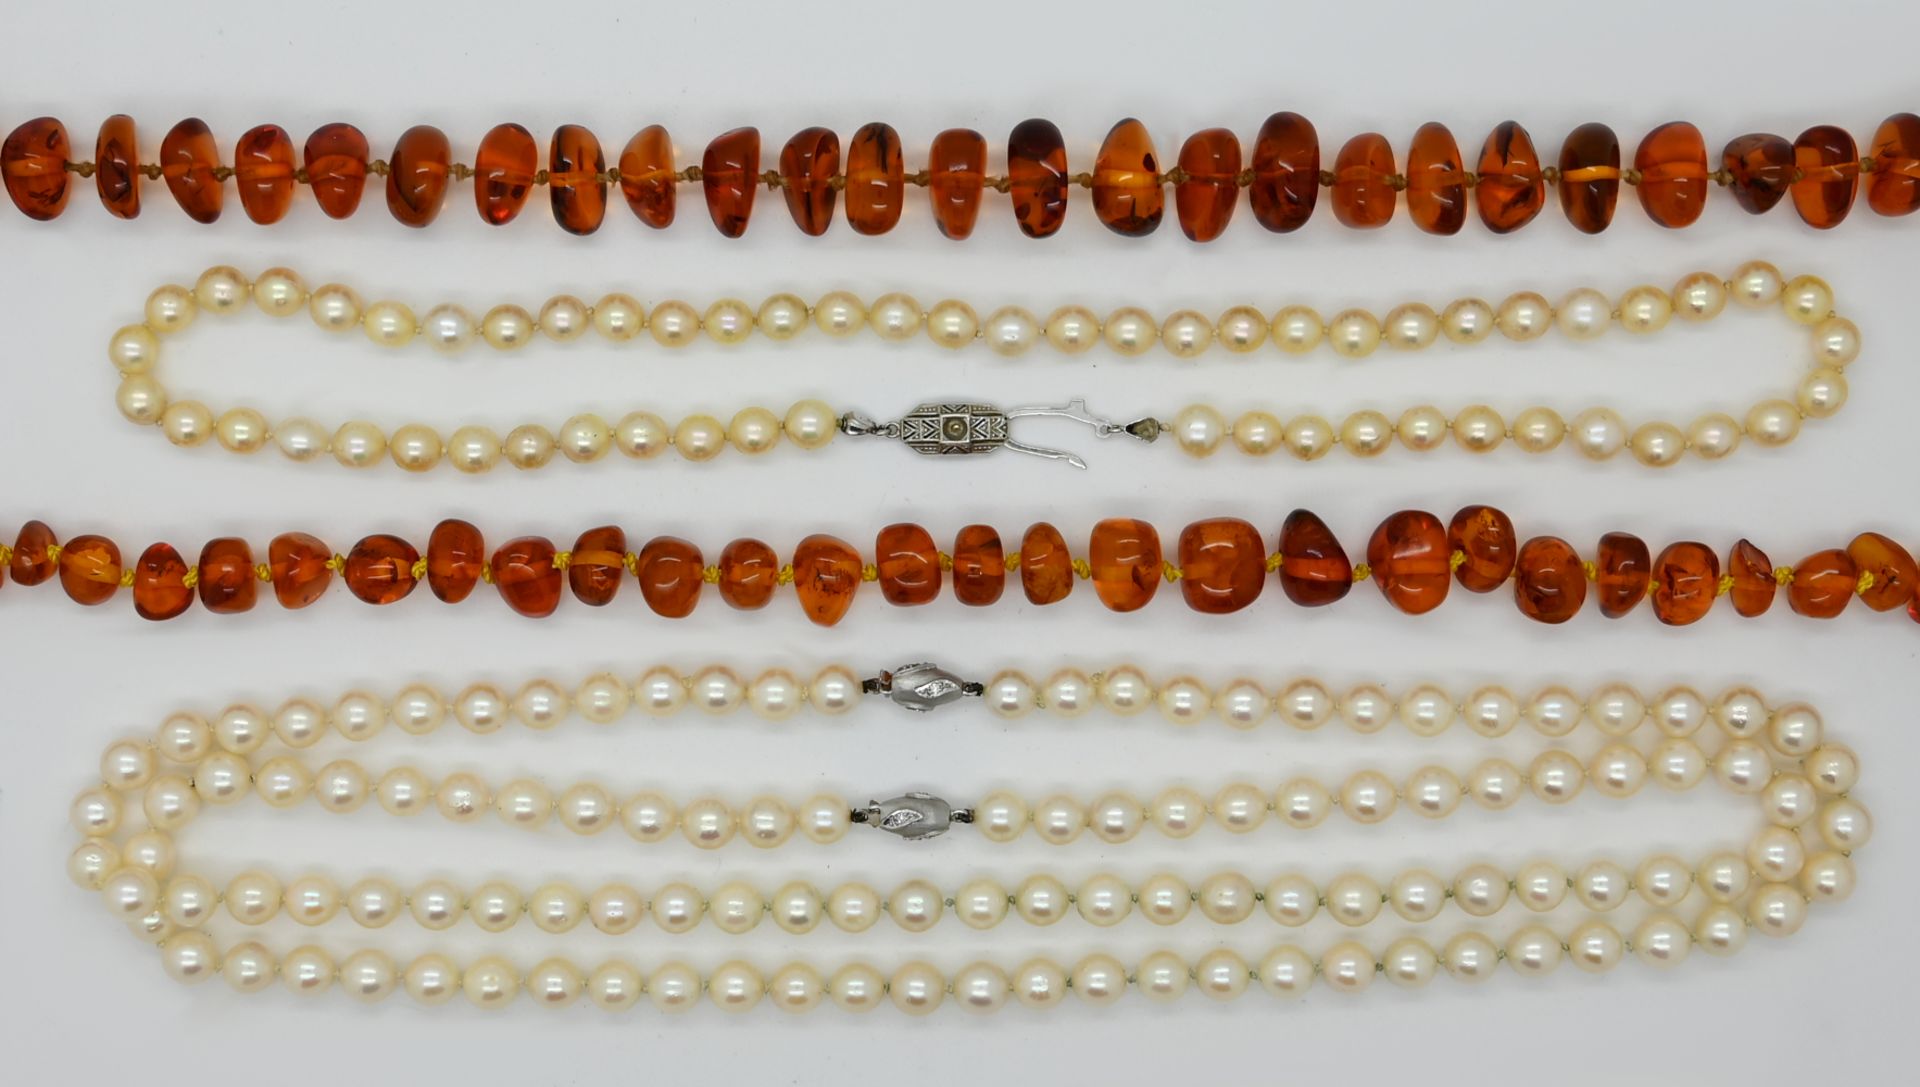 2 Perlenketten je mit gleichem Verschluss WG 14ct. und kleinen Brillanten, D ca. 0,7cm, 1 Perlenkett